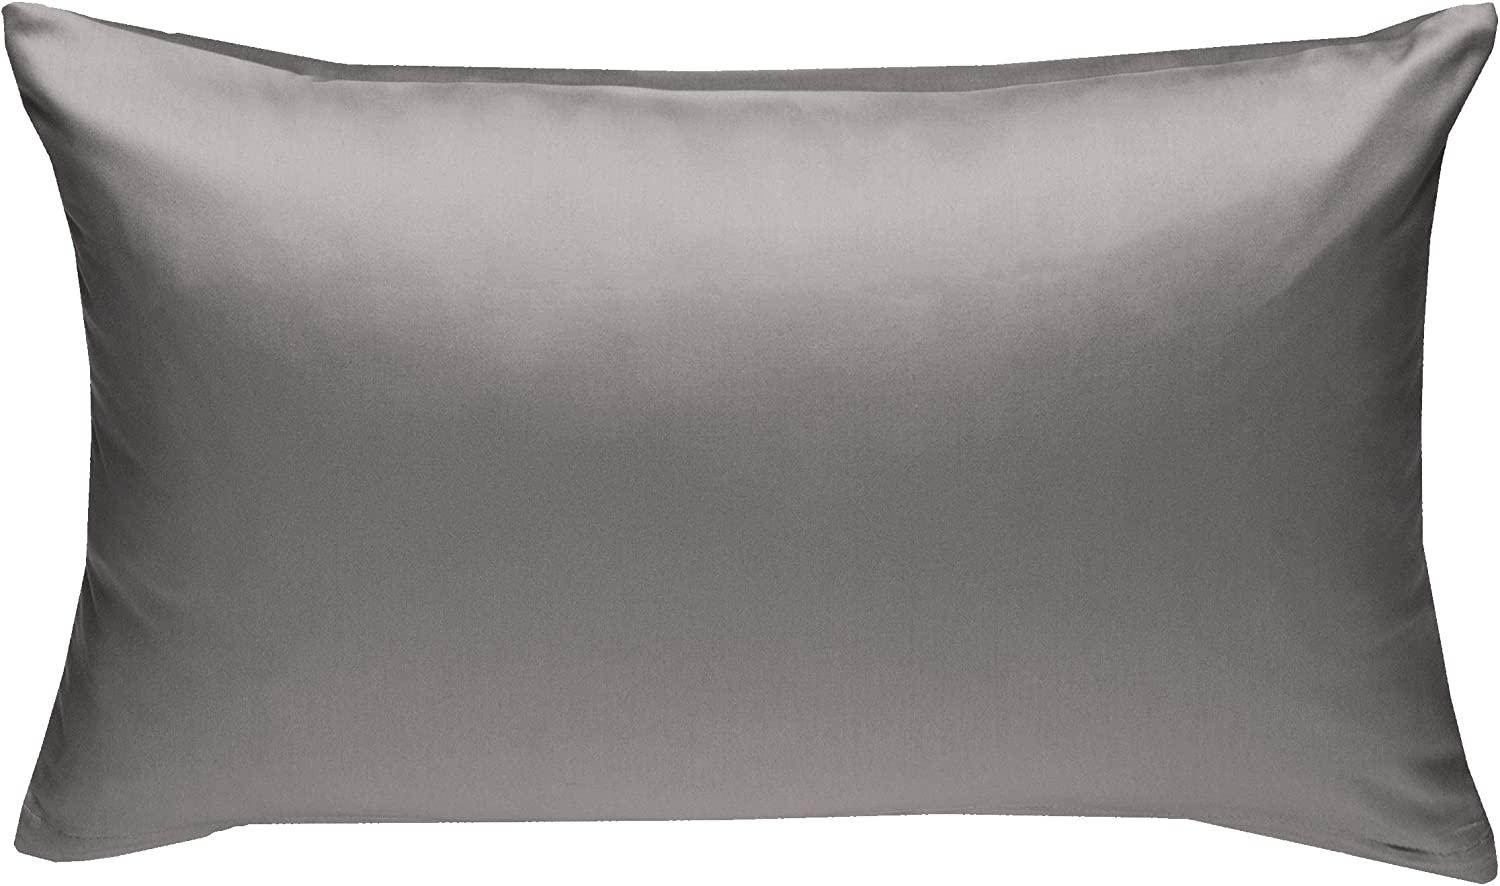 Bettwaesche-mit-Stil Mako-Satin / Baumwollsatin Bettwäsche uni / einfarbig dunkelgrau Kissenbezug 50x70 cm Bild 1